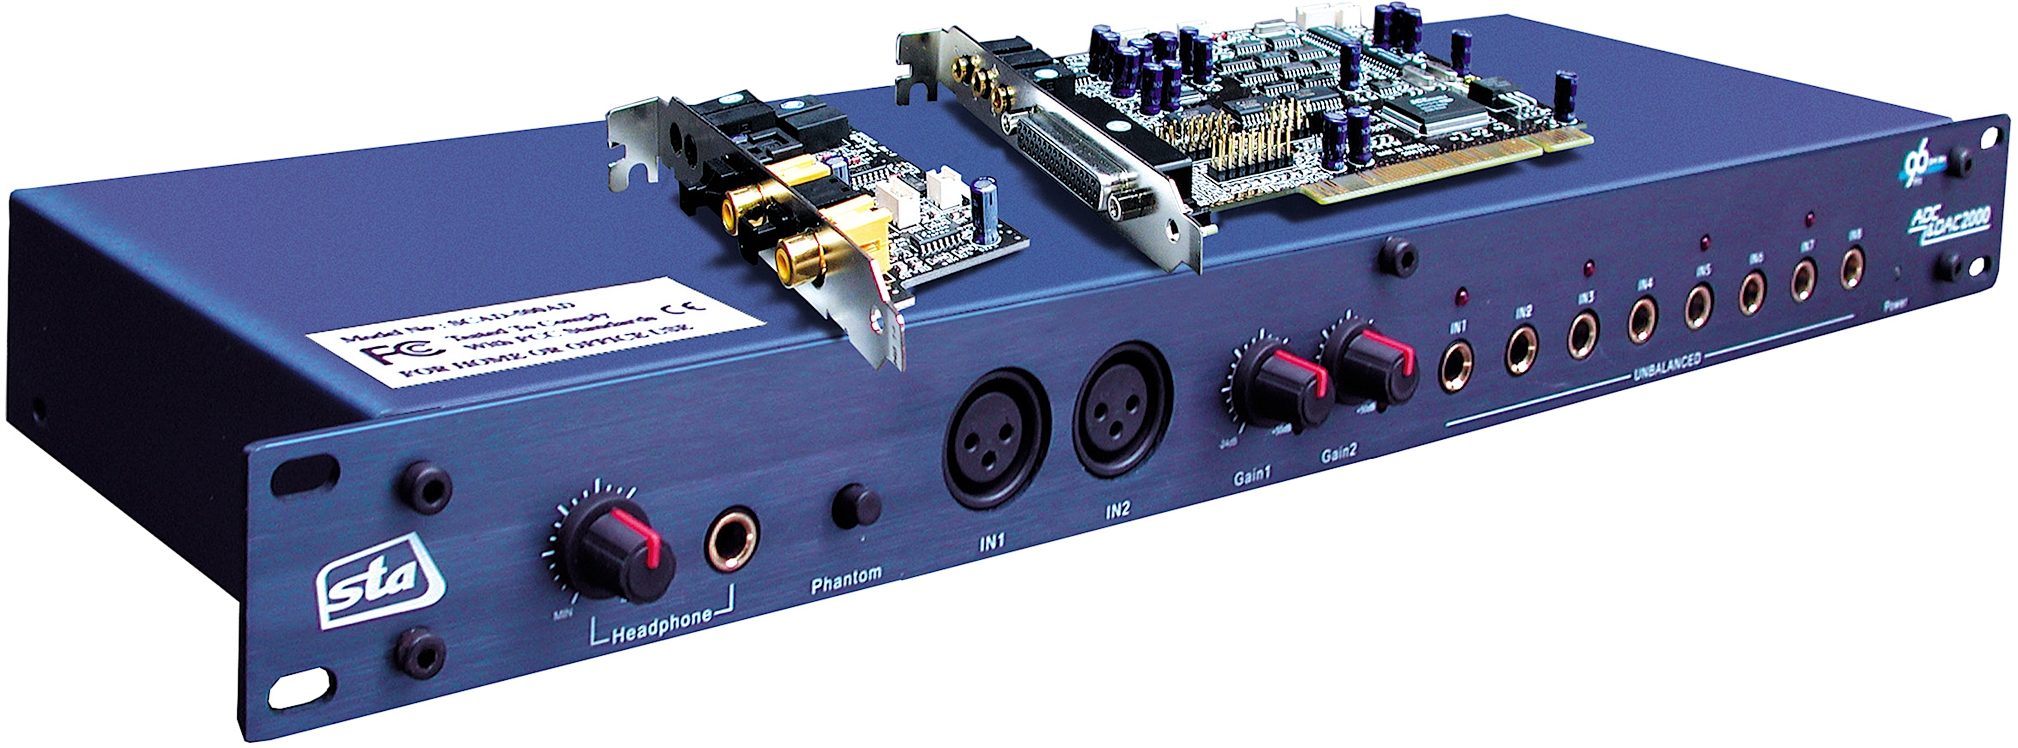 ST Audio DSP2000 C-Port 24-Bit 96kHz Recording Interface